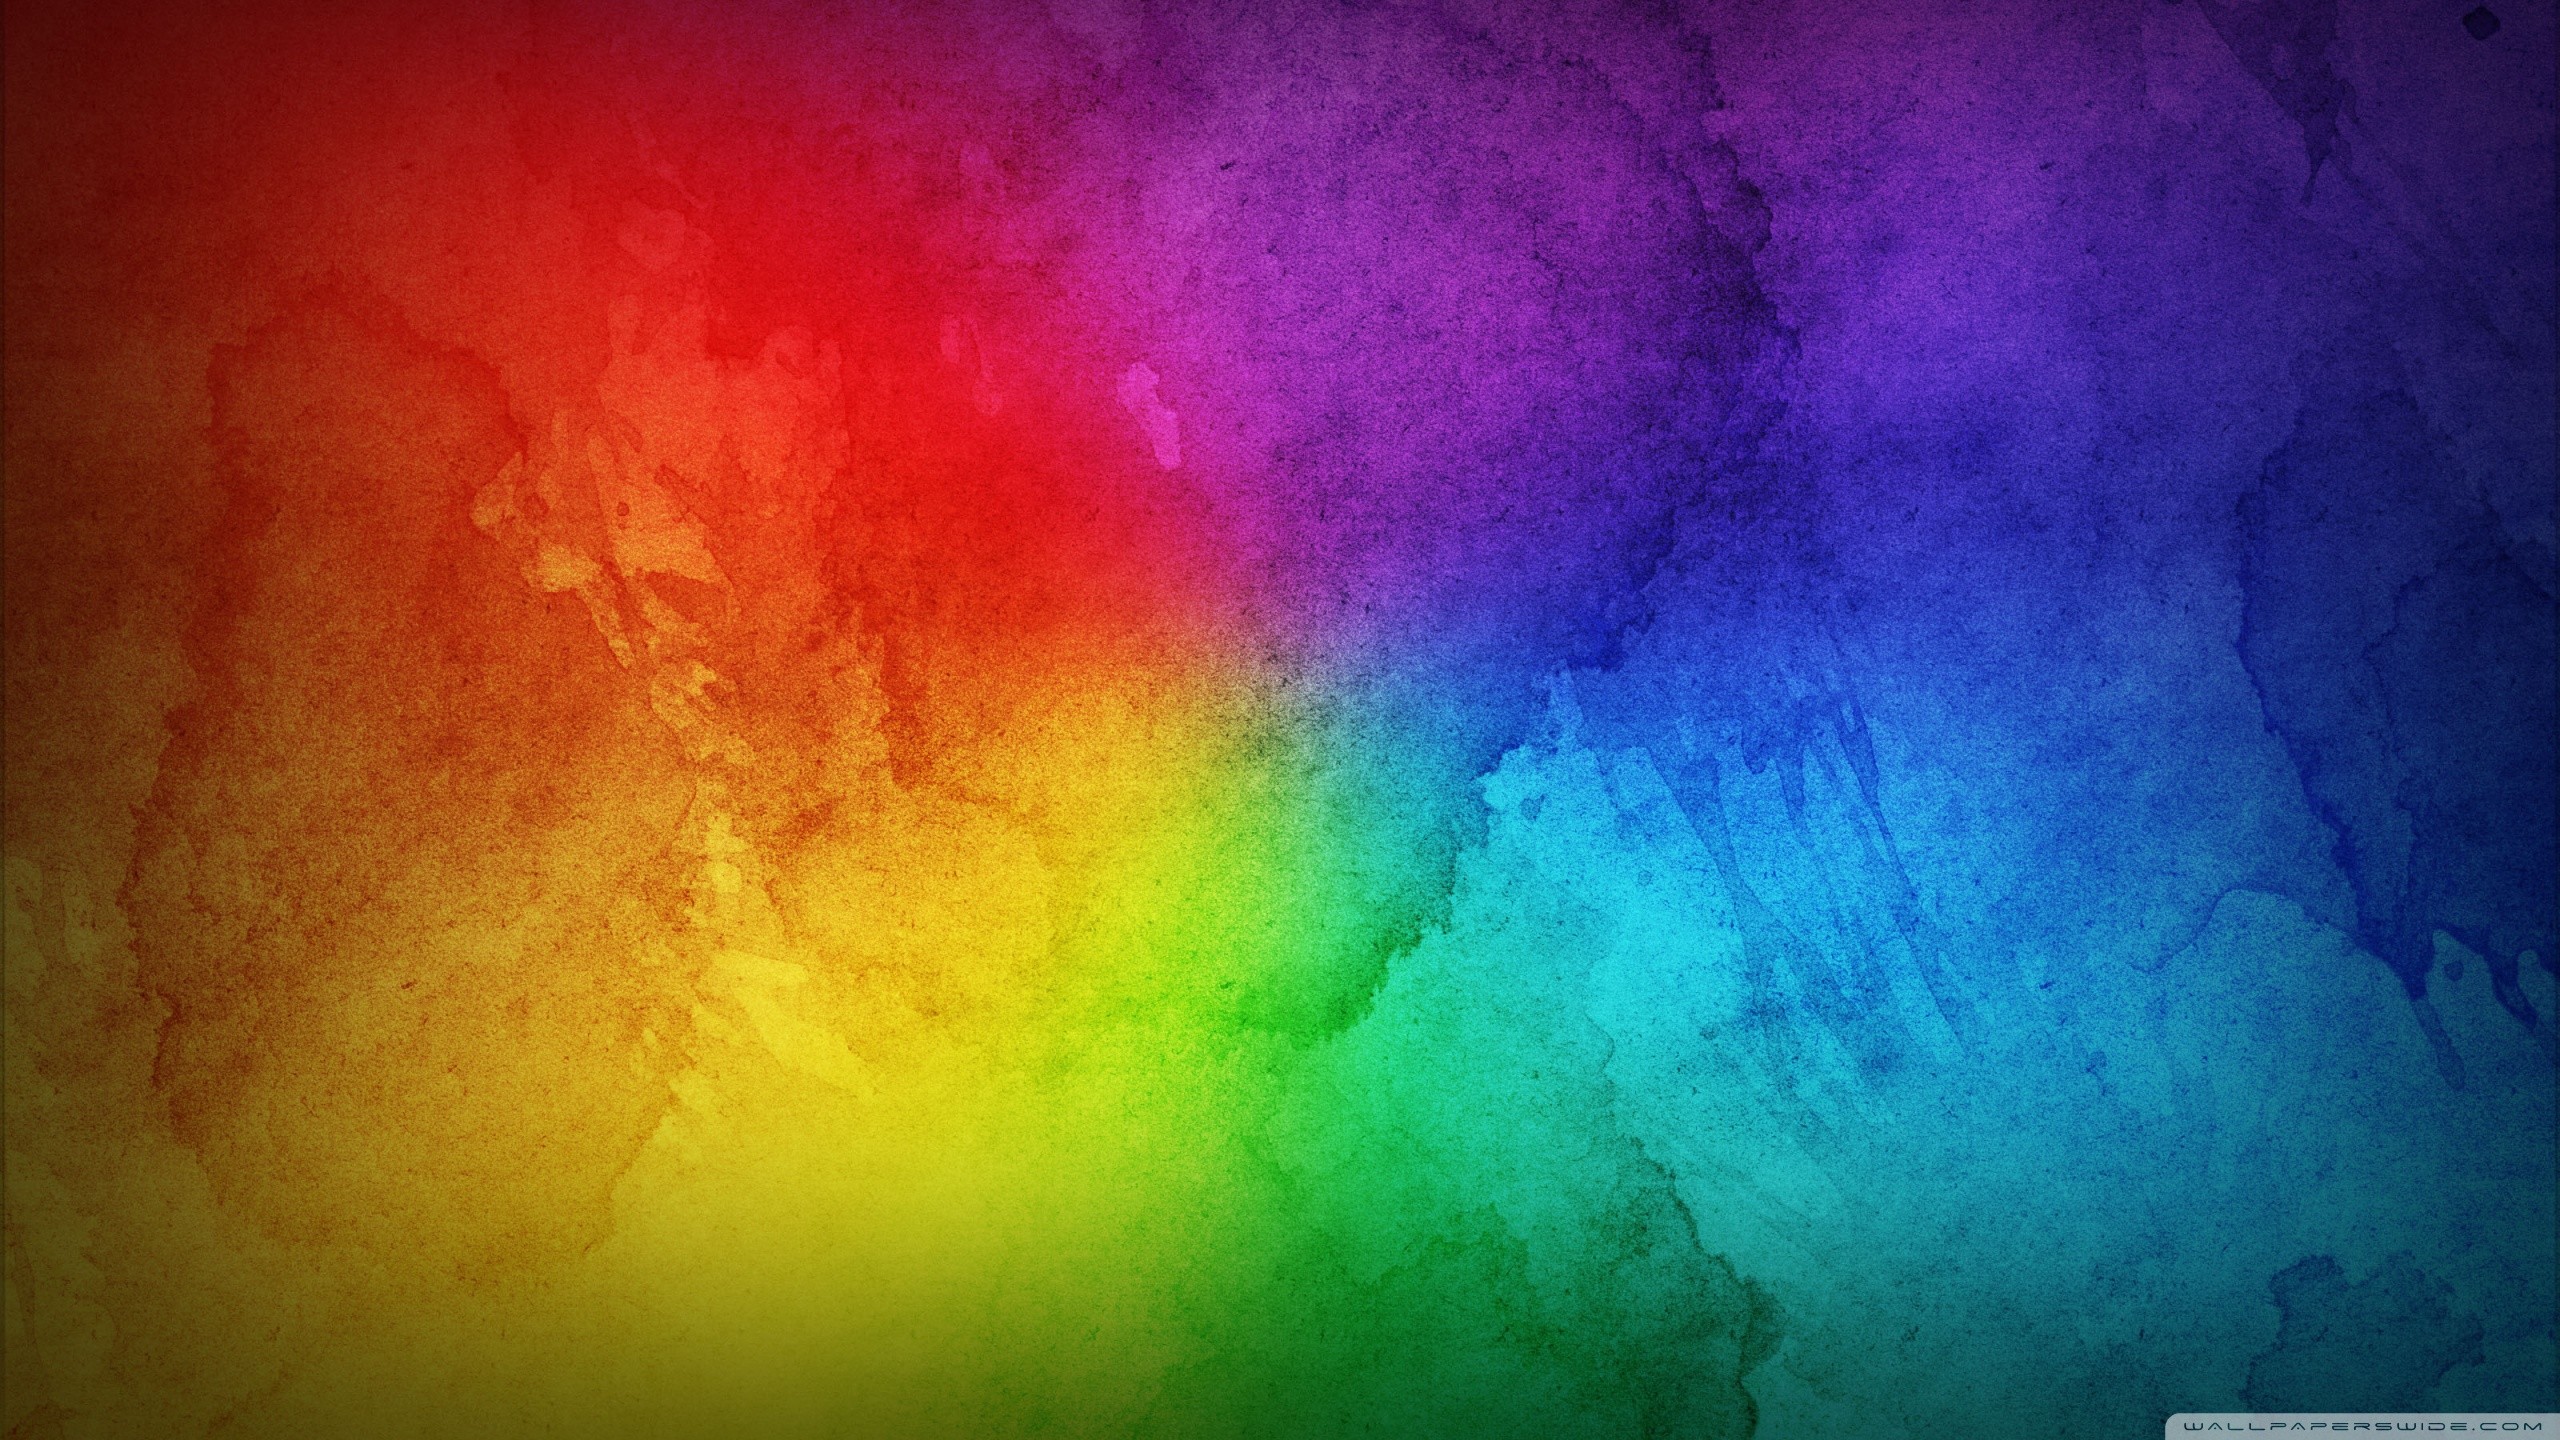 rainbow wallpaper pack 1080p hd | sharovarka | Pinterest | Rainbow wallpaper,  Wallpaper and Widescreen wallpaper